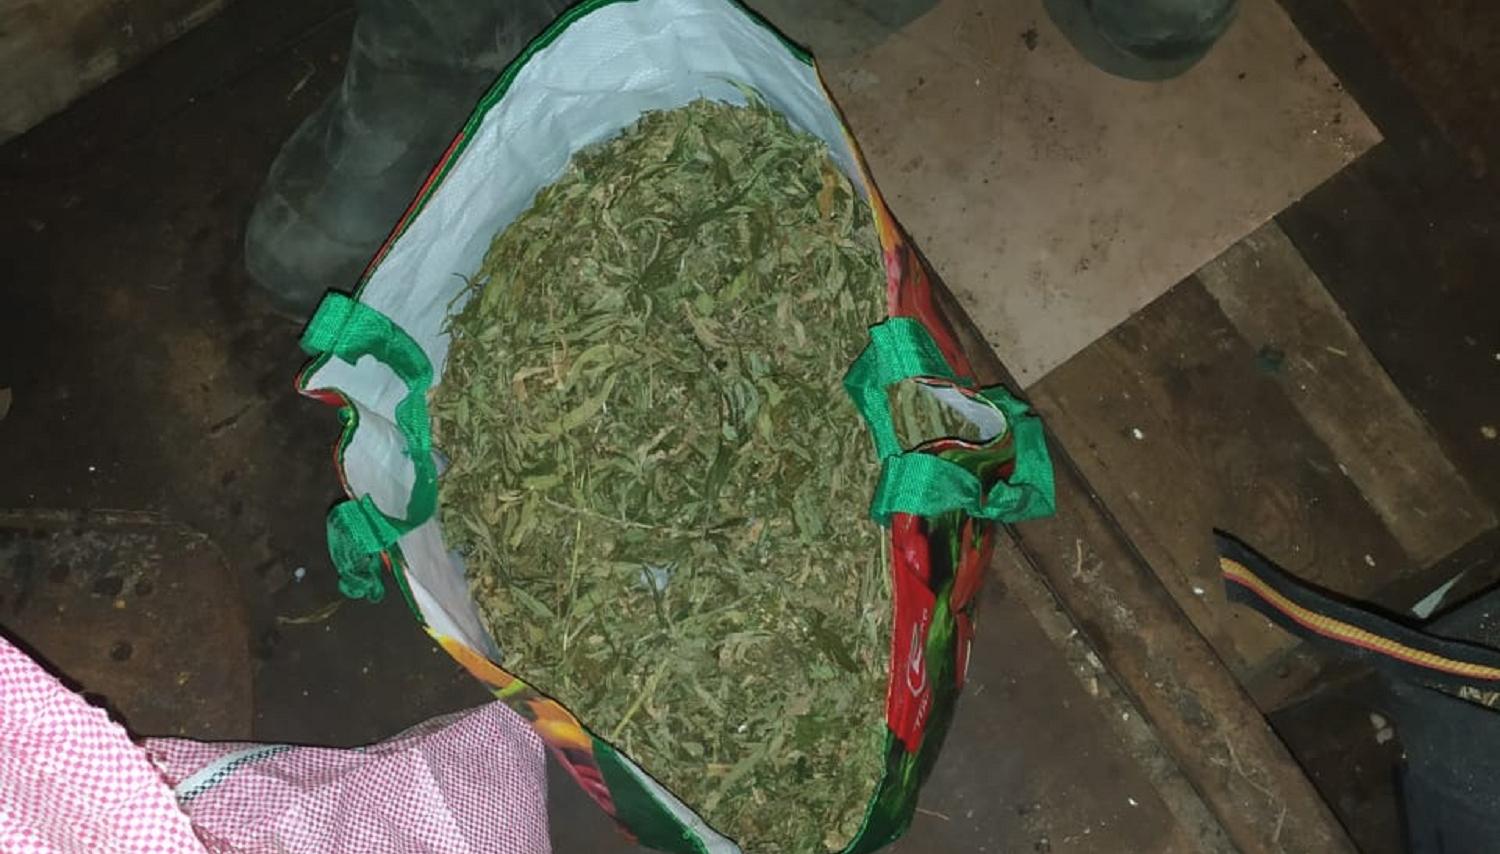 У жителя Тверской области изъяли килограмм марихуаны